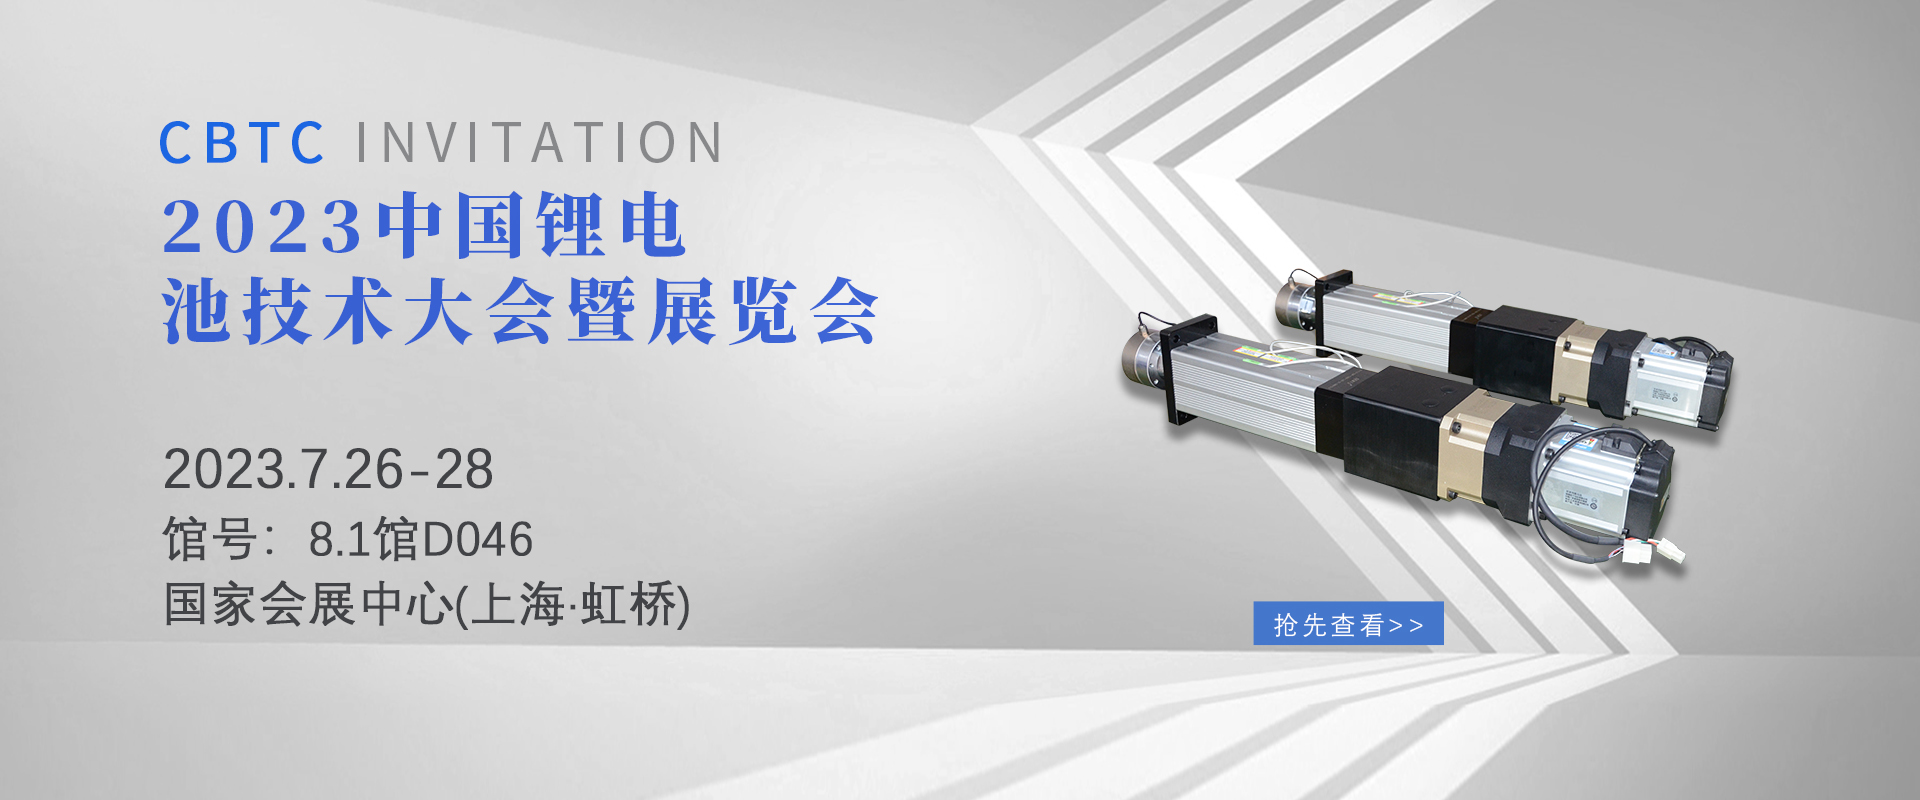 森拓品牌邀您参加7月26日中国锂电池技术展览会 